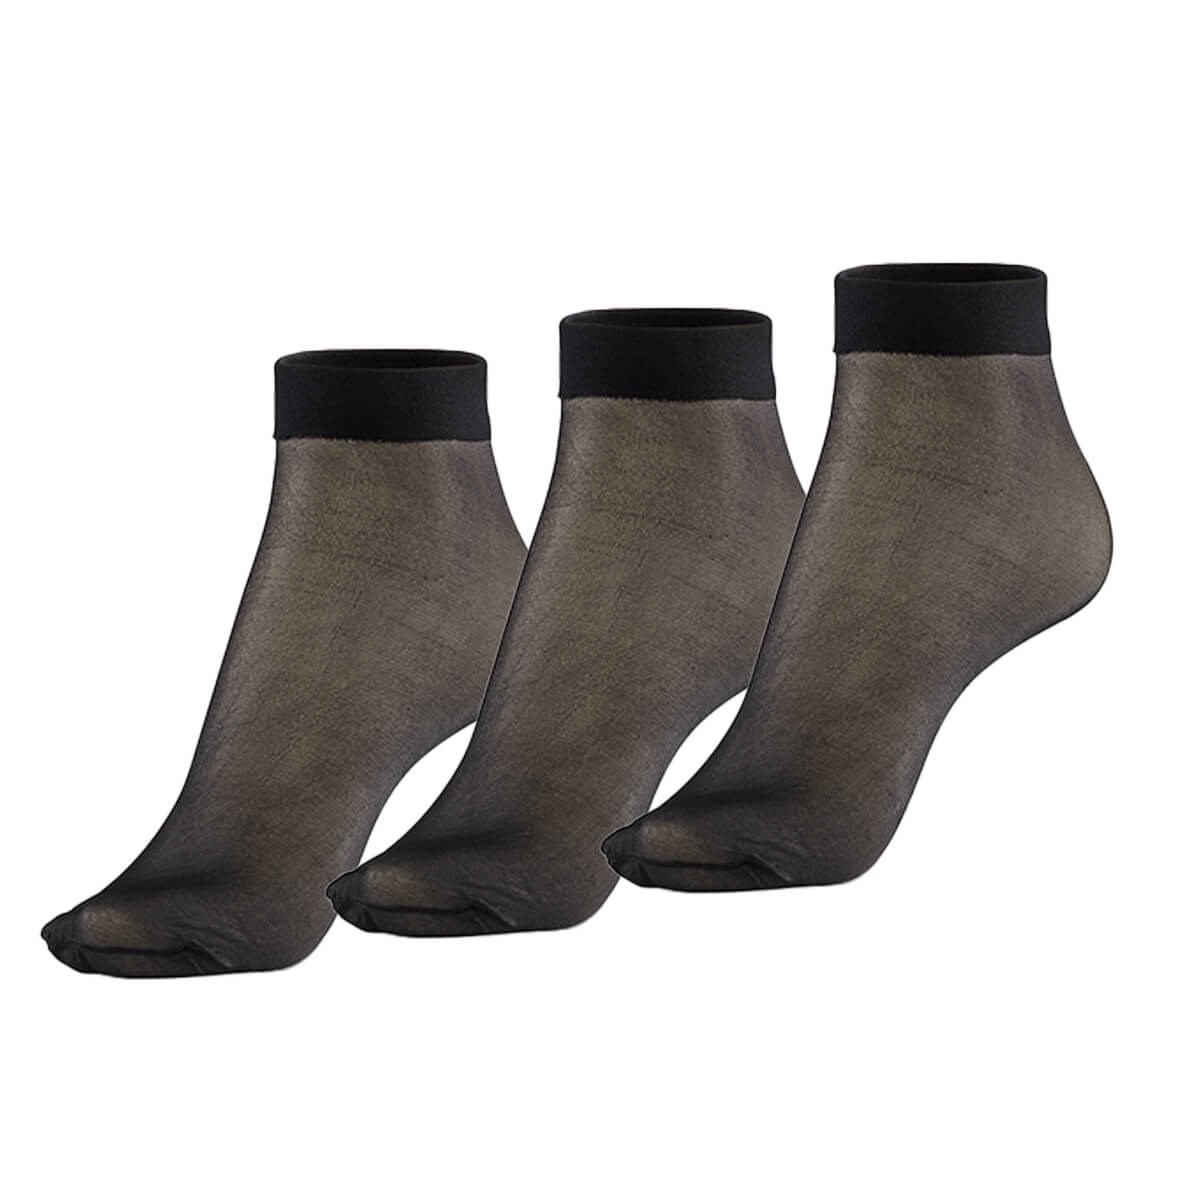 Koku Yapmayan Soket İnce Siyah Gümüş Çorap 3'lü Ekonomik Paket Satın Al!